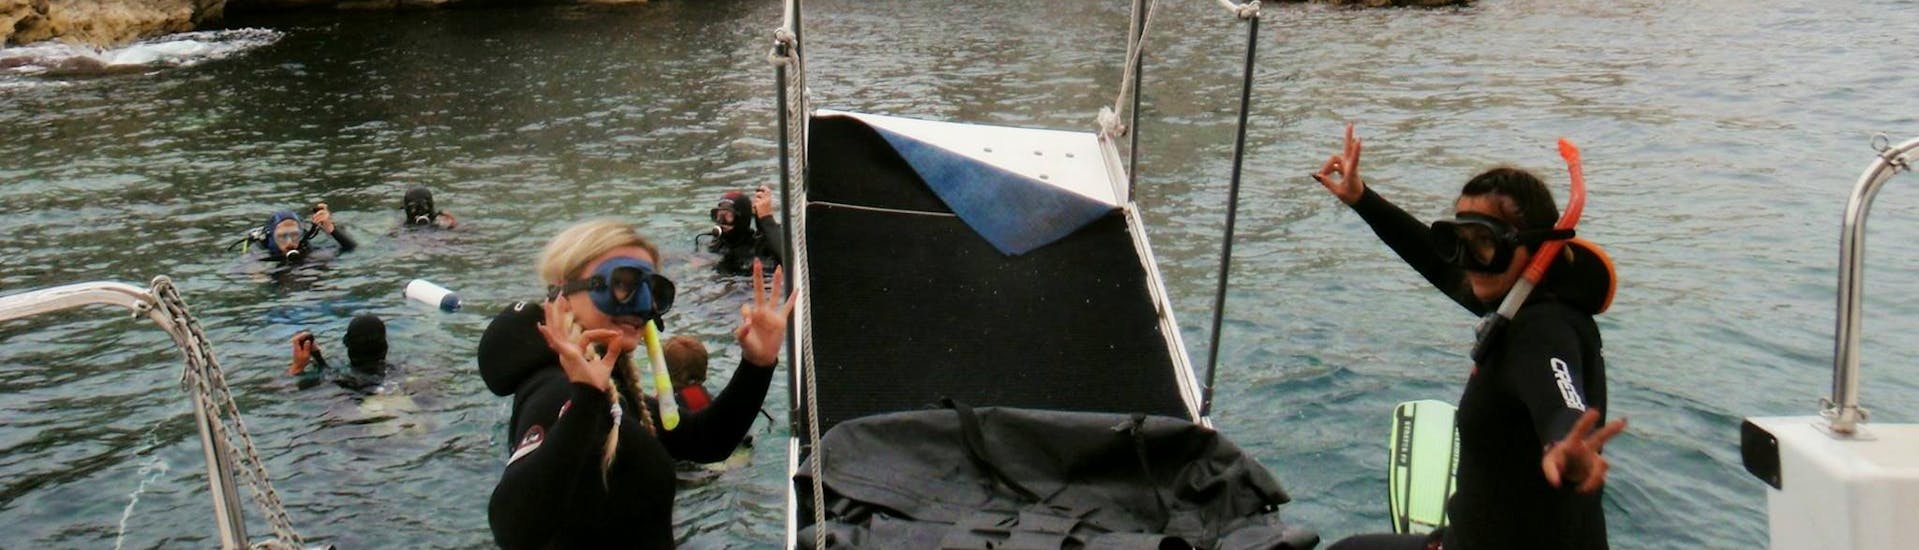 Zwei Mädchen springen ins Wasser für ihre erste Schnorchel-Session in Korfu mit Dive Easy.